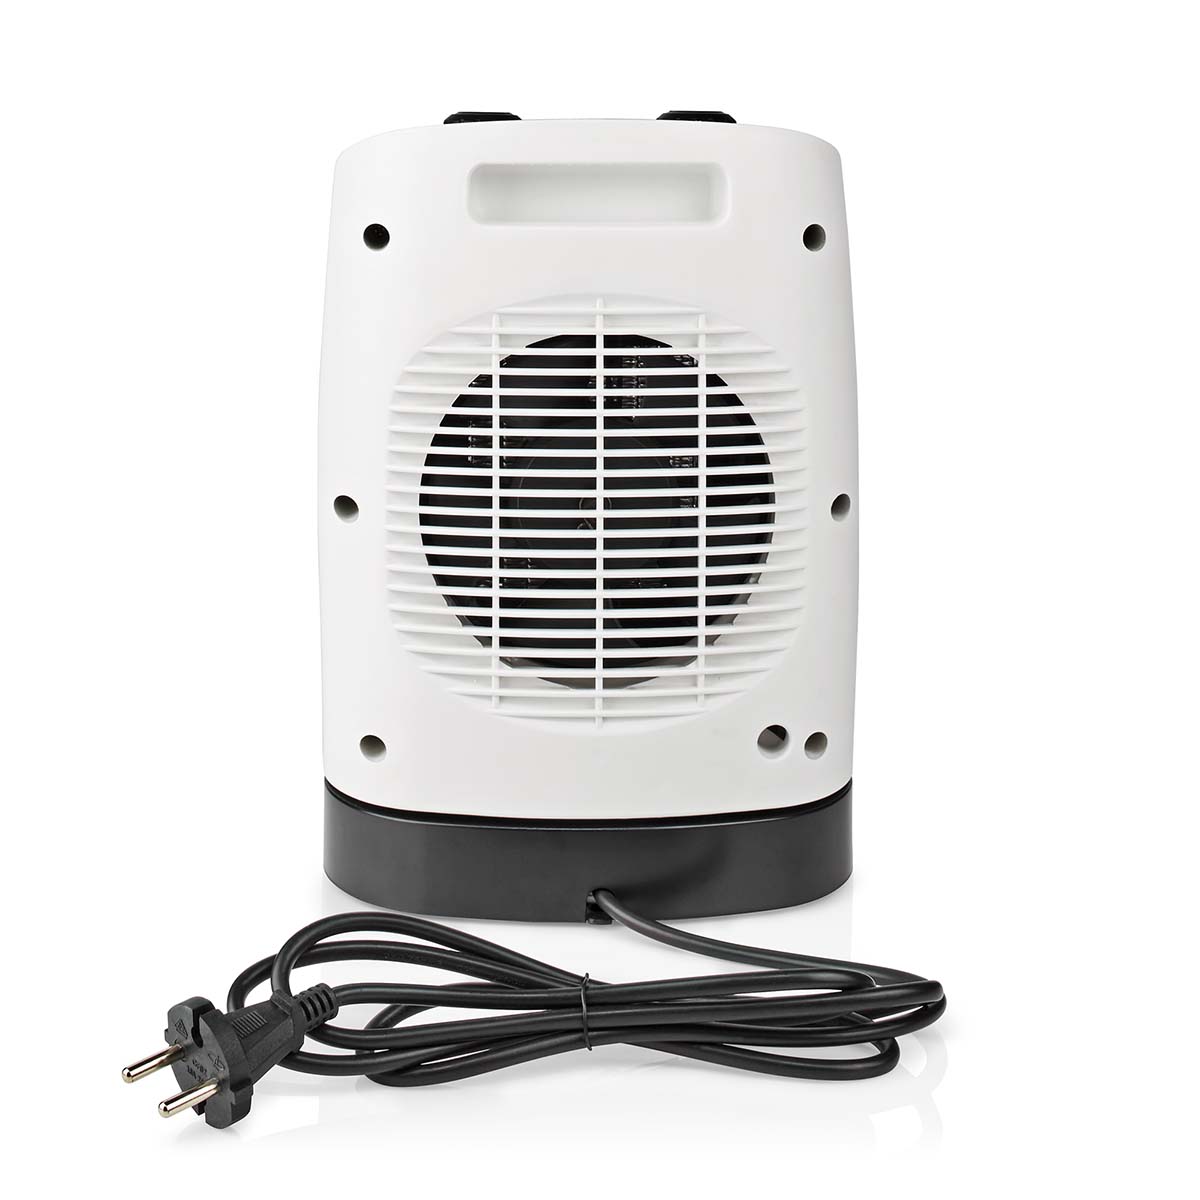 NEW Portable Electric Fan Heater Hot & Cool Air Winter/Summer 1000/2000 Watt 